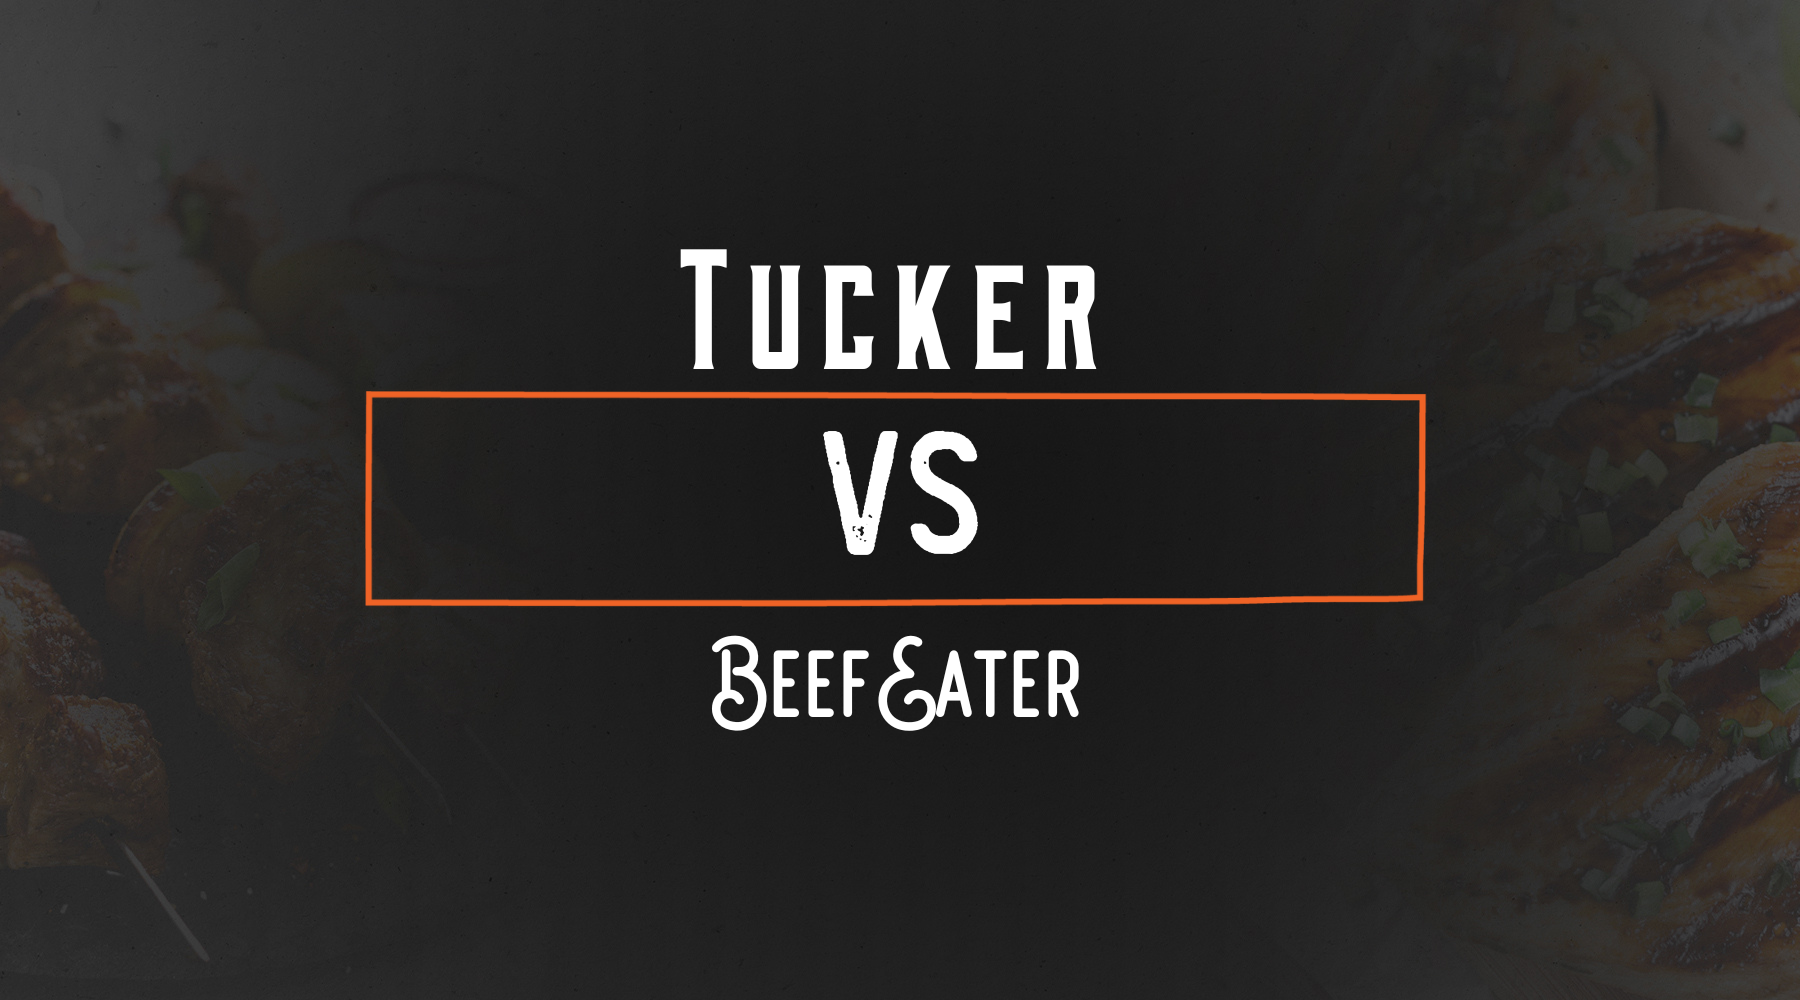 Tucker vs BeefEater